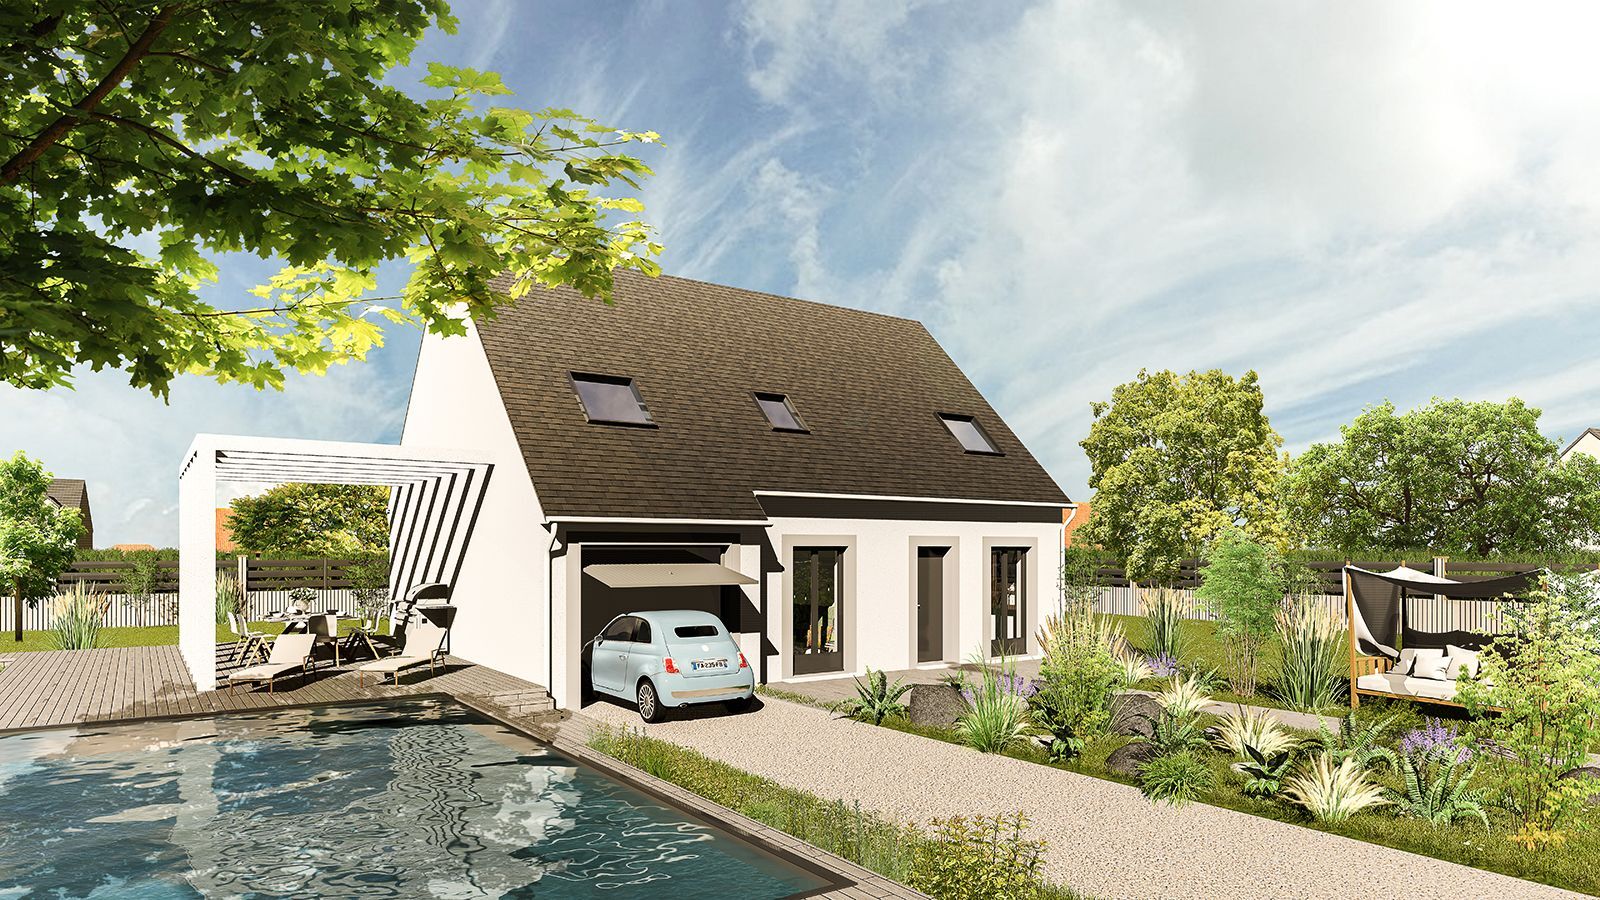 Vente Maison neuve 112 m² à Marville-Moutiers-Brule 238 239 €